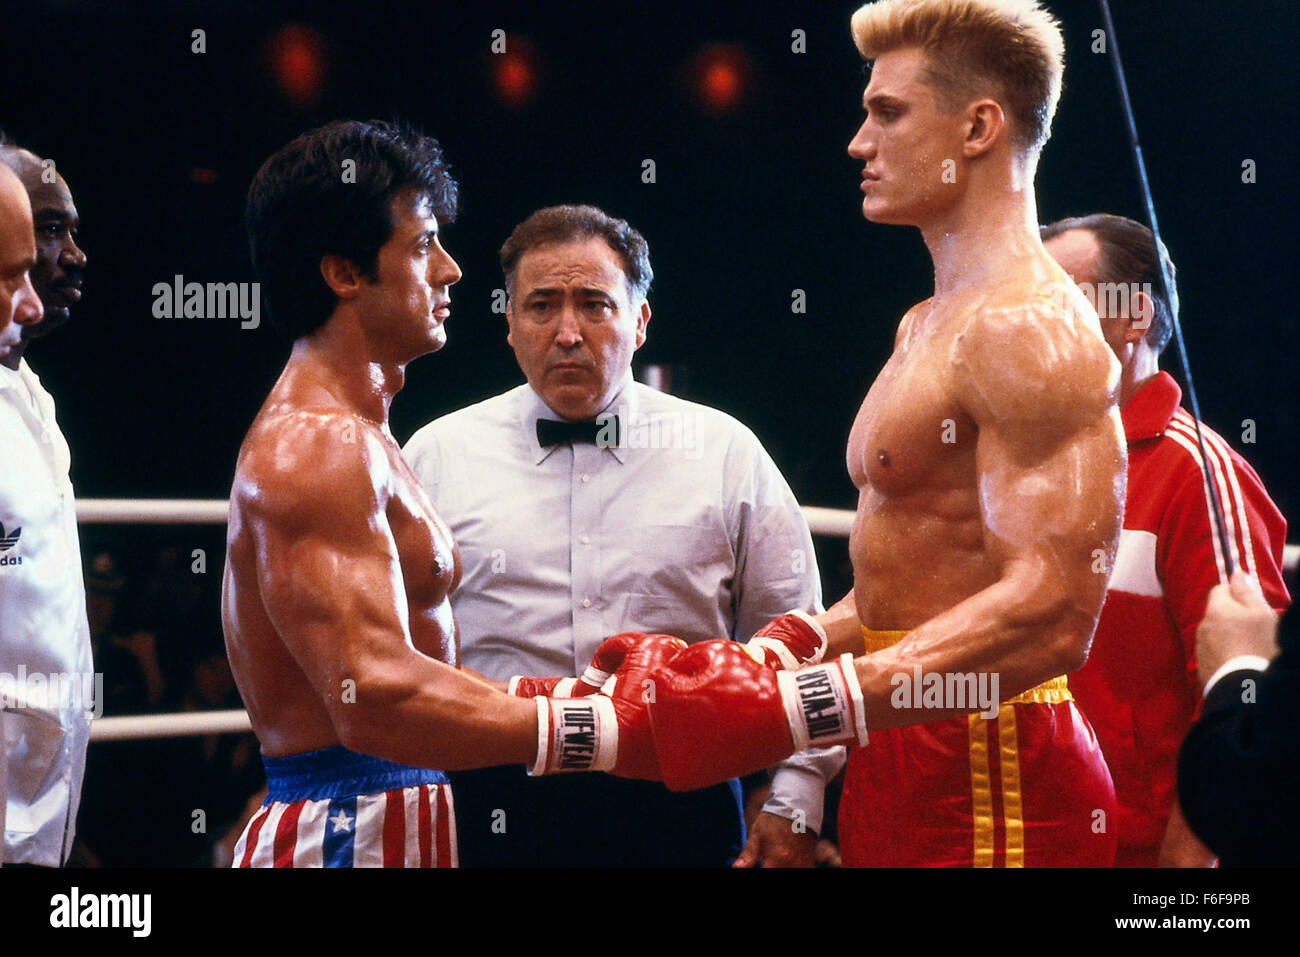 Nov 27, 1985; Las Vegas, NV, USA; Actors SYLVESTER STALLONE as Rocky Balboa and DOLPH LUNDGREN as Ivan Drago in 'Rocky 4'. Directed by Sylvester Stallone. Stock Photo